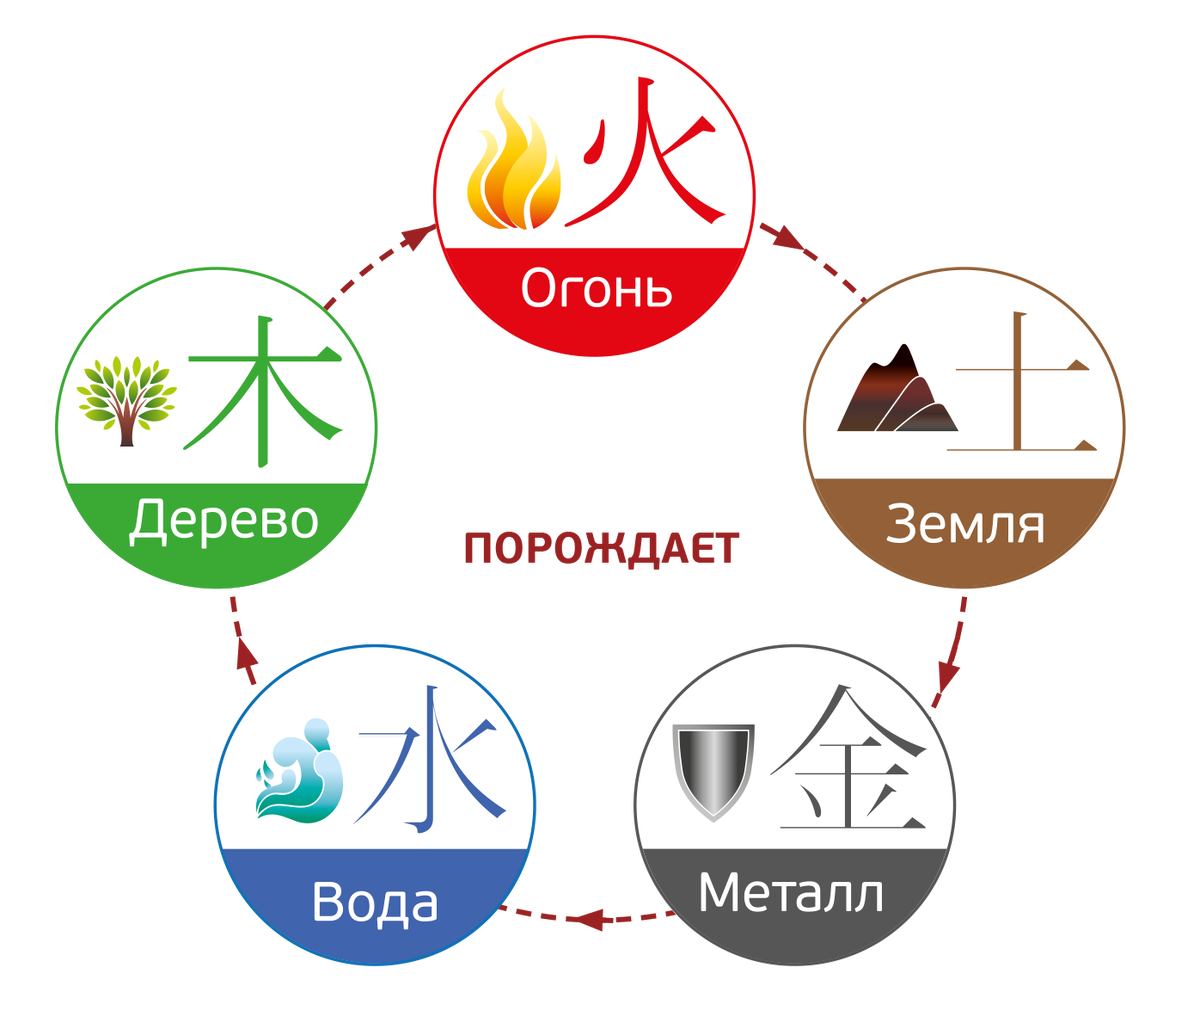 5 земных элементов